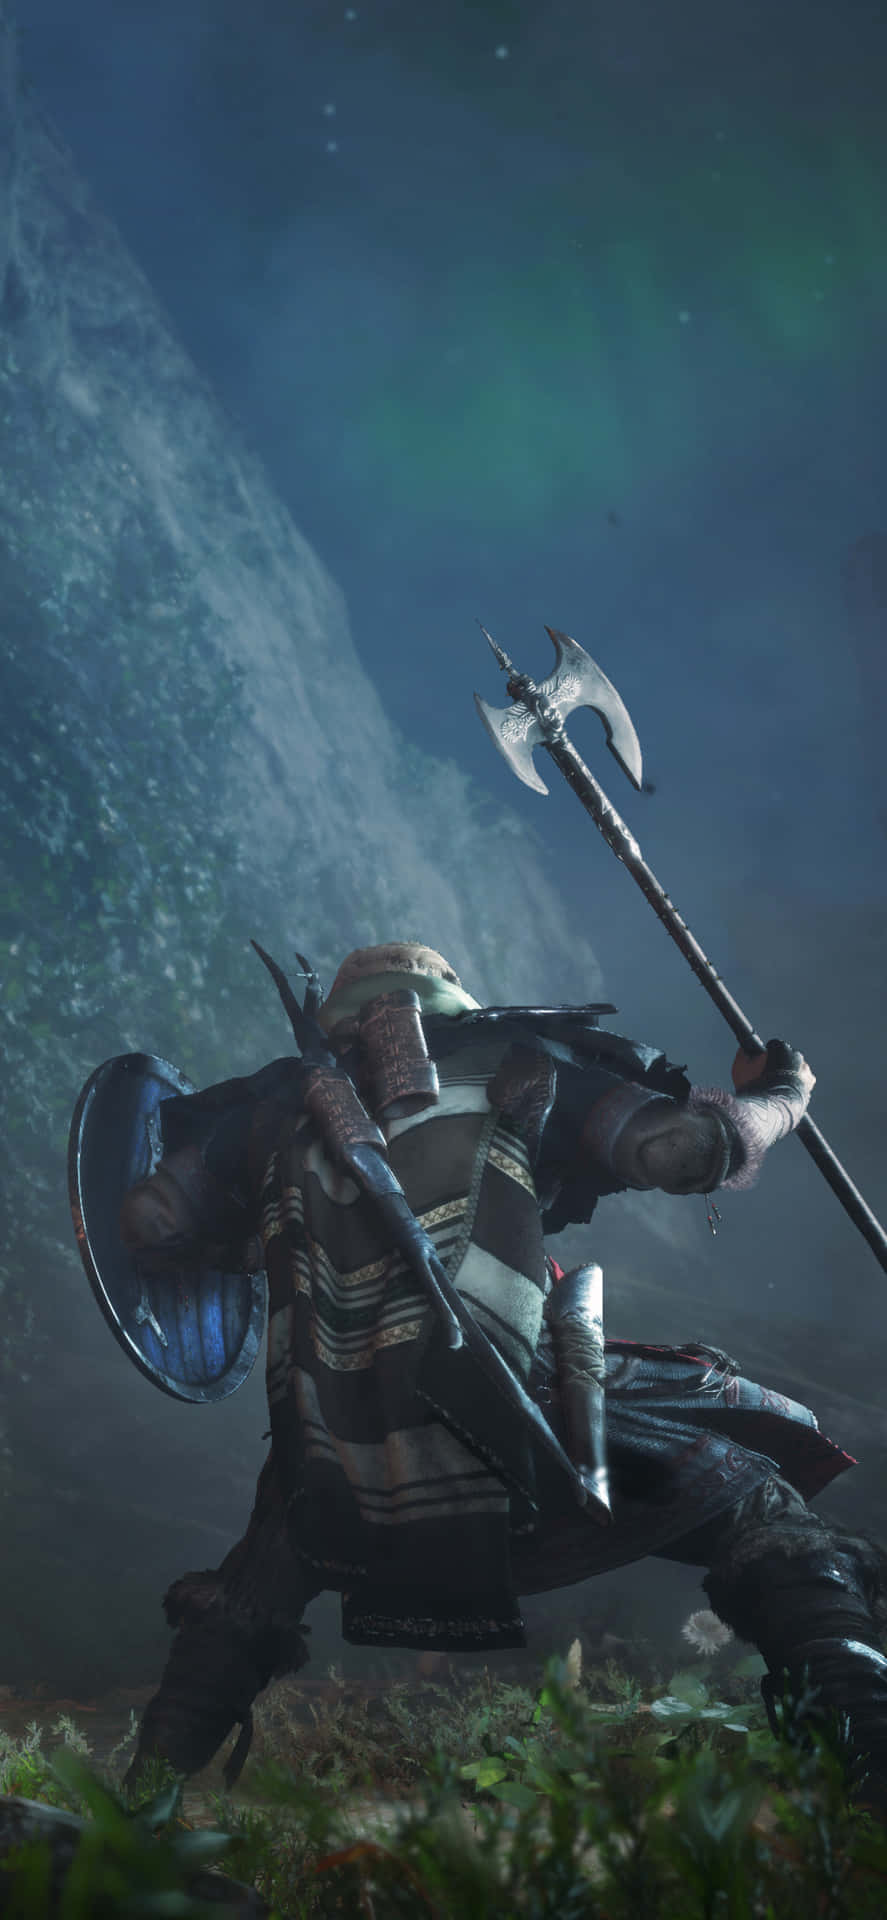 Iphonex Assassins Creed Valhalla Hintergrund Im Kampfmodus.